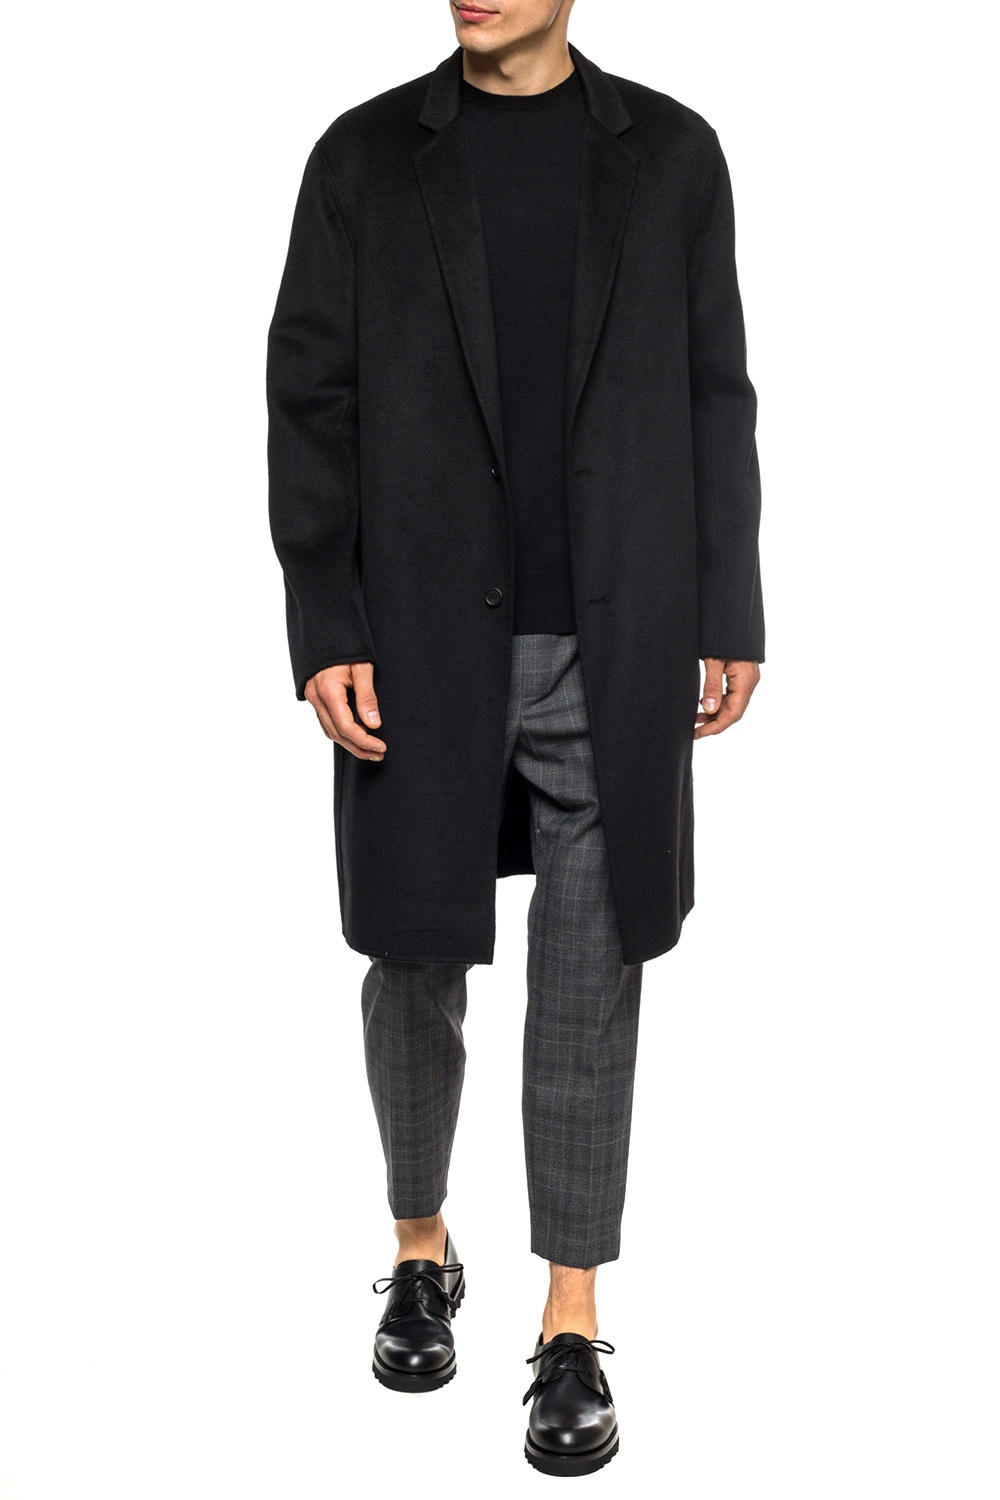 AllSaints 'Hanson' coat with notch lapels | Men's Clothing | Vitkac